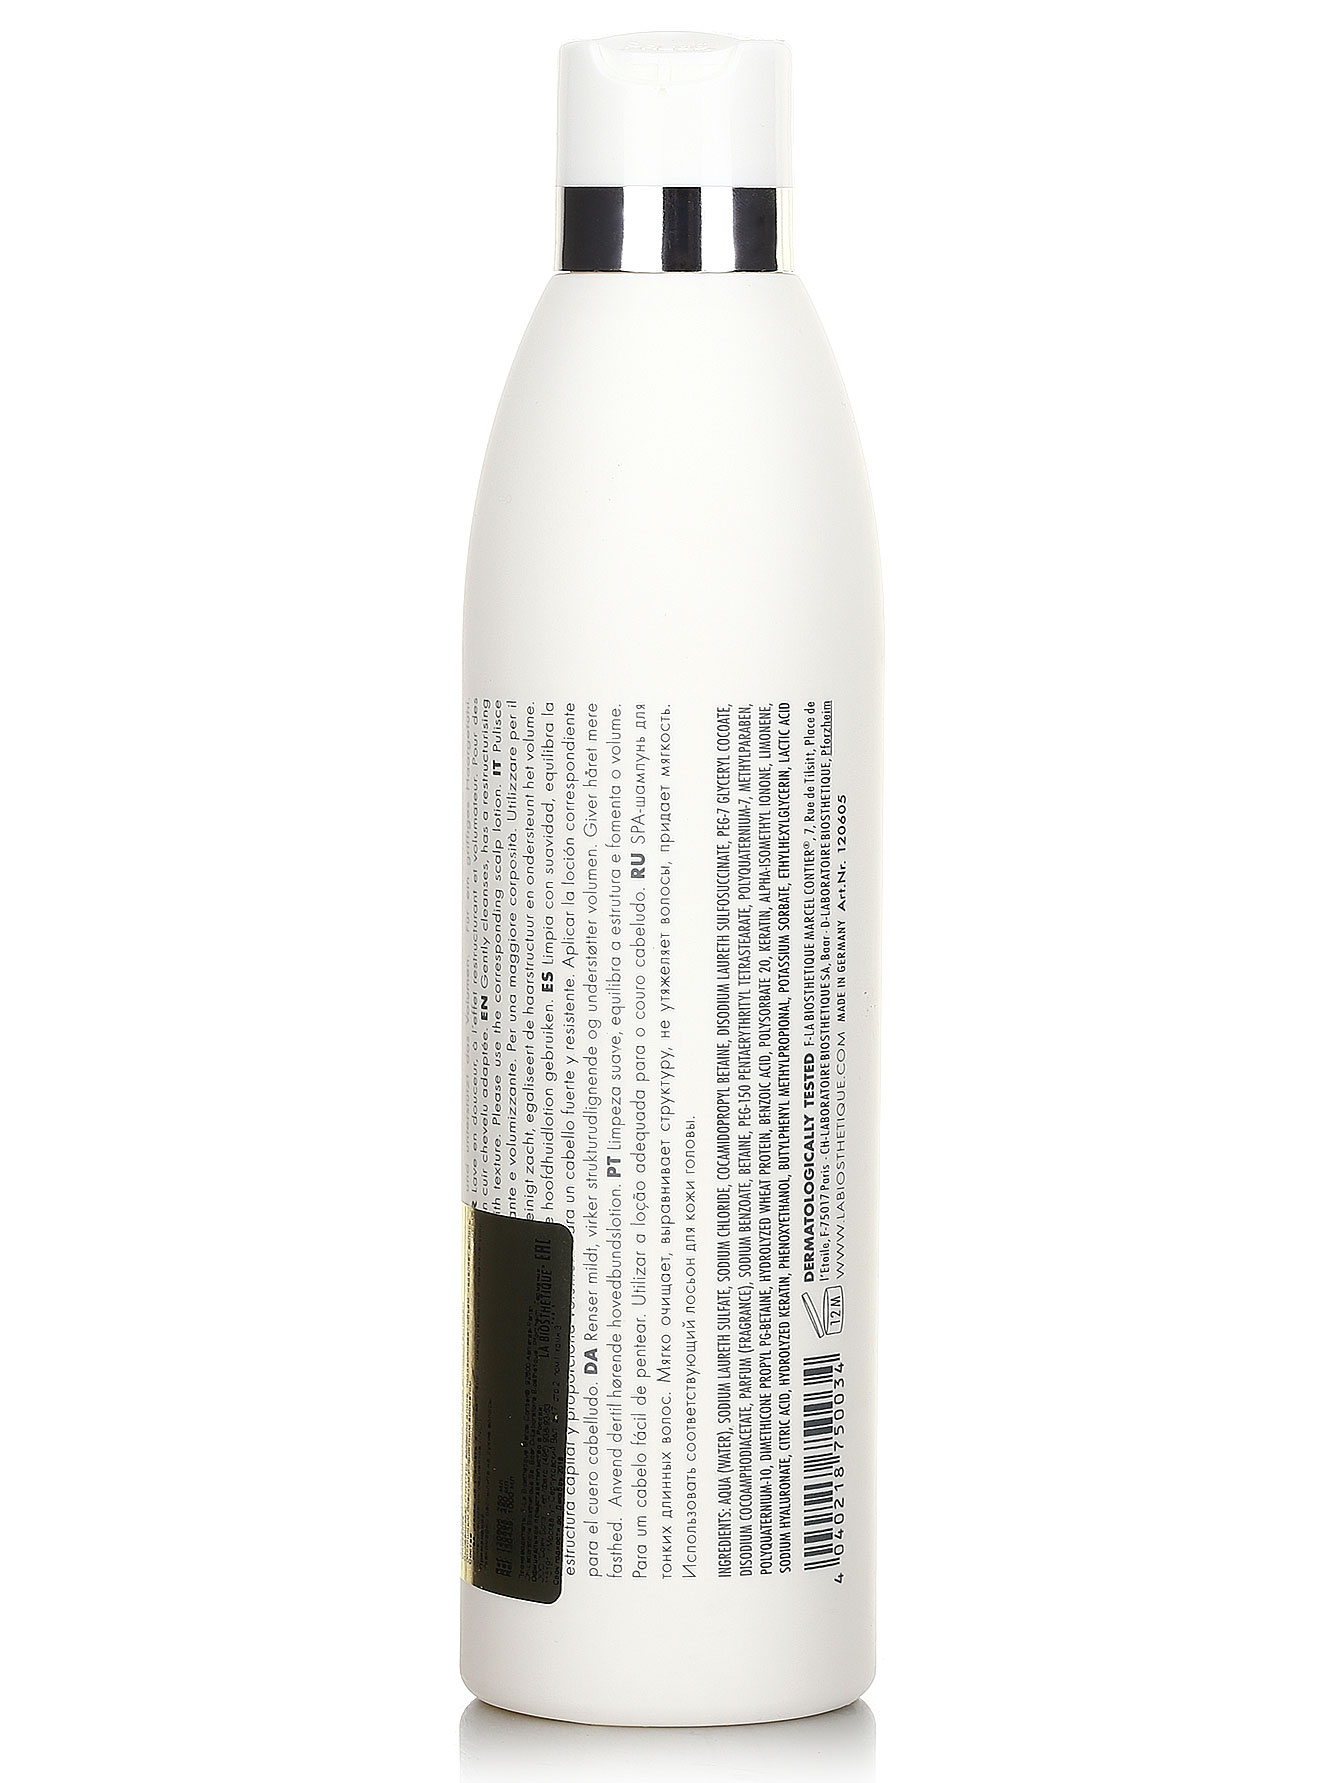  SPA-шампунь для тонких длинных волос - Hair Care, 250ml - Модель Верх-Низ